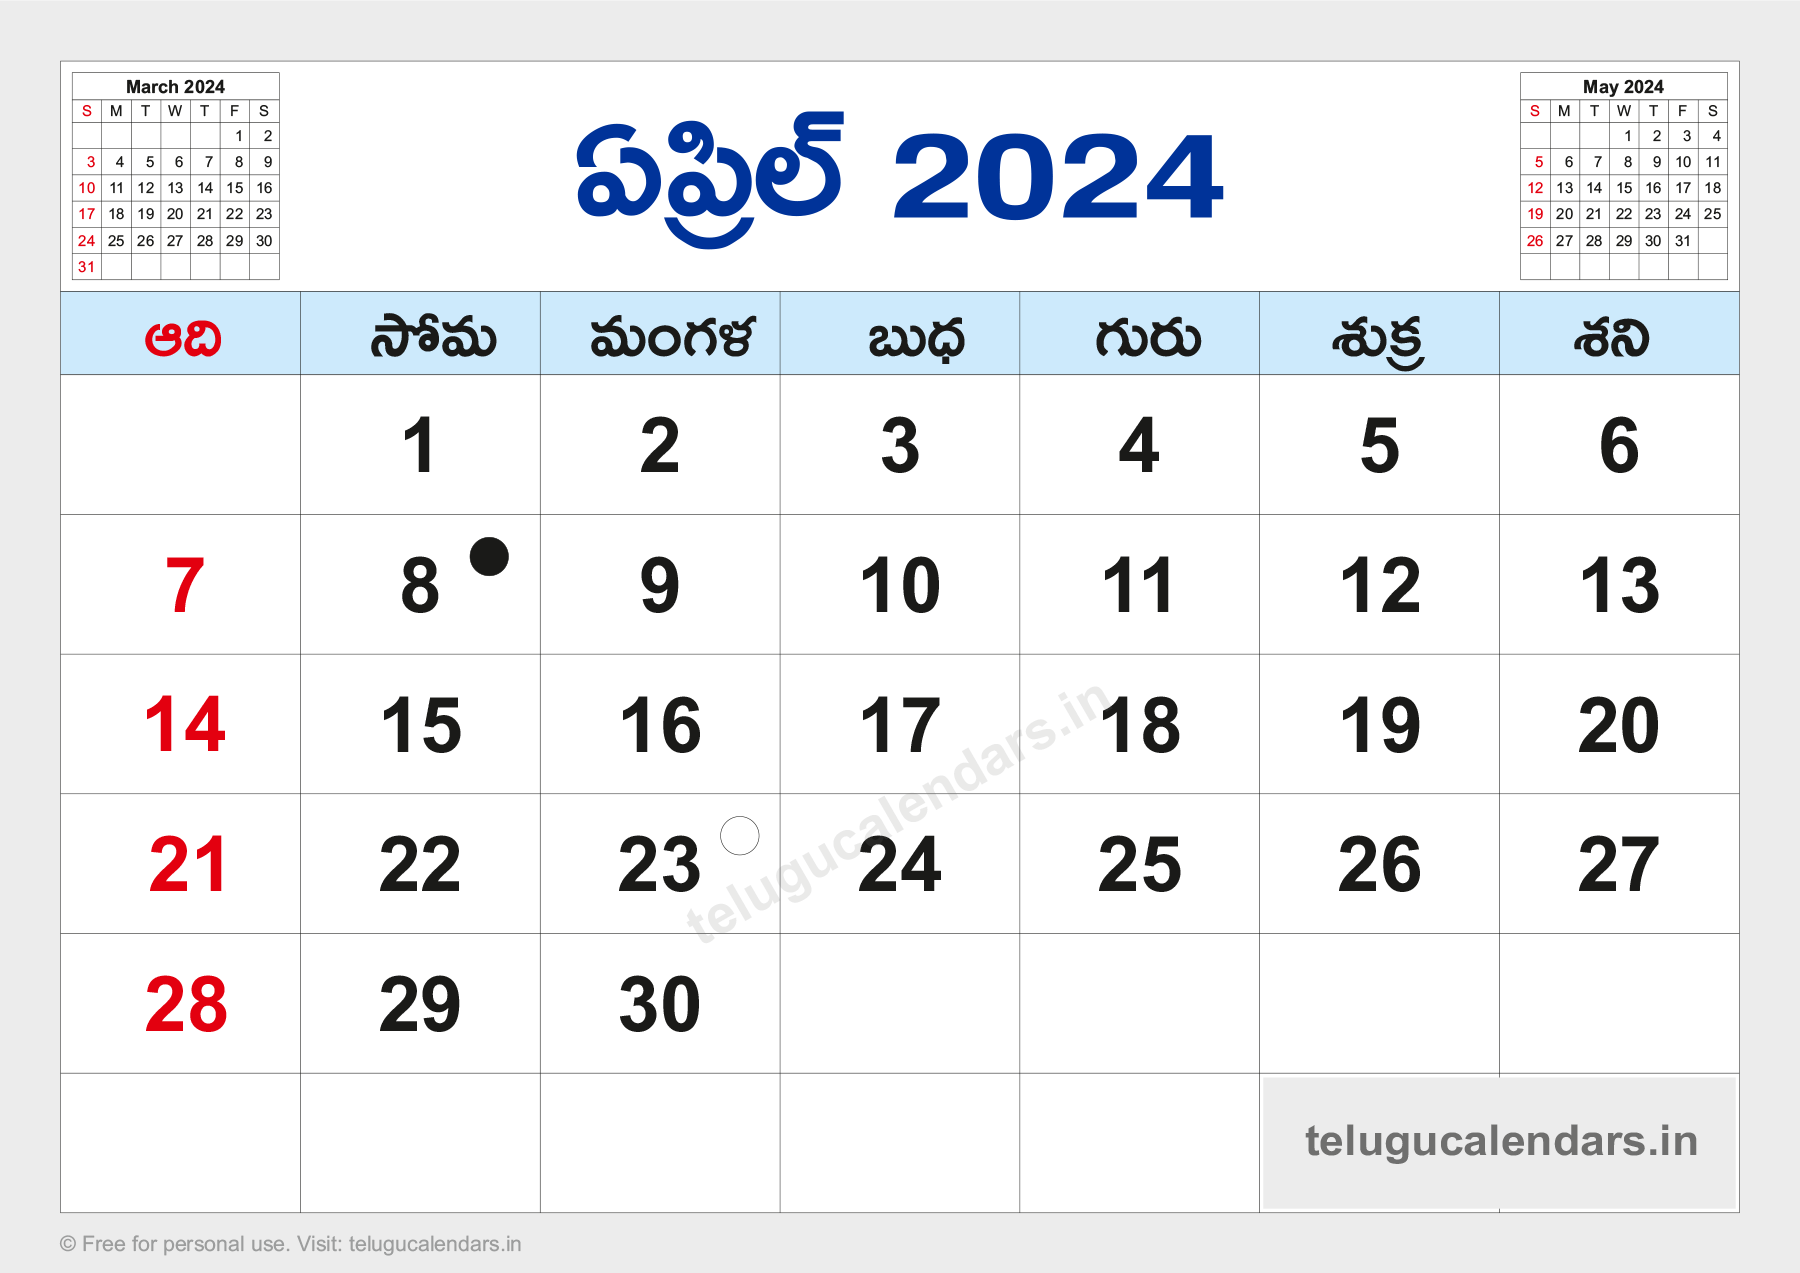 April Telugu Calendar 2024 Dates glyn charissa